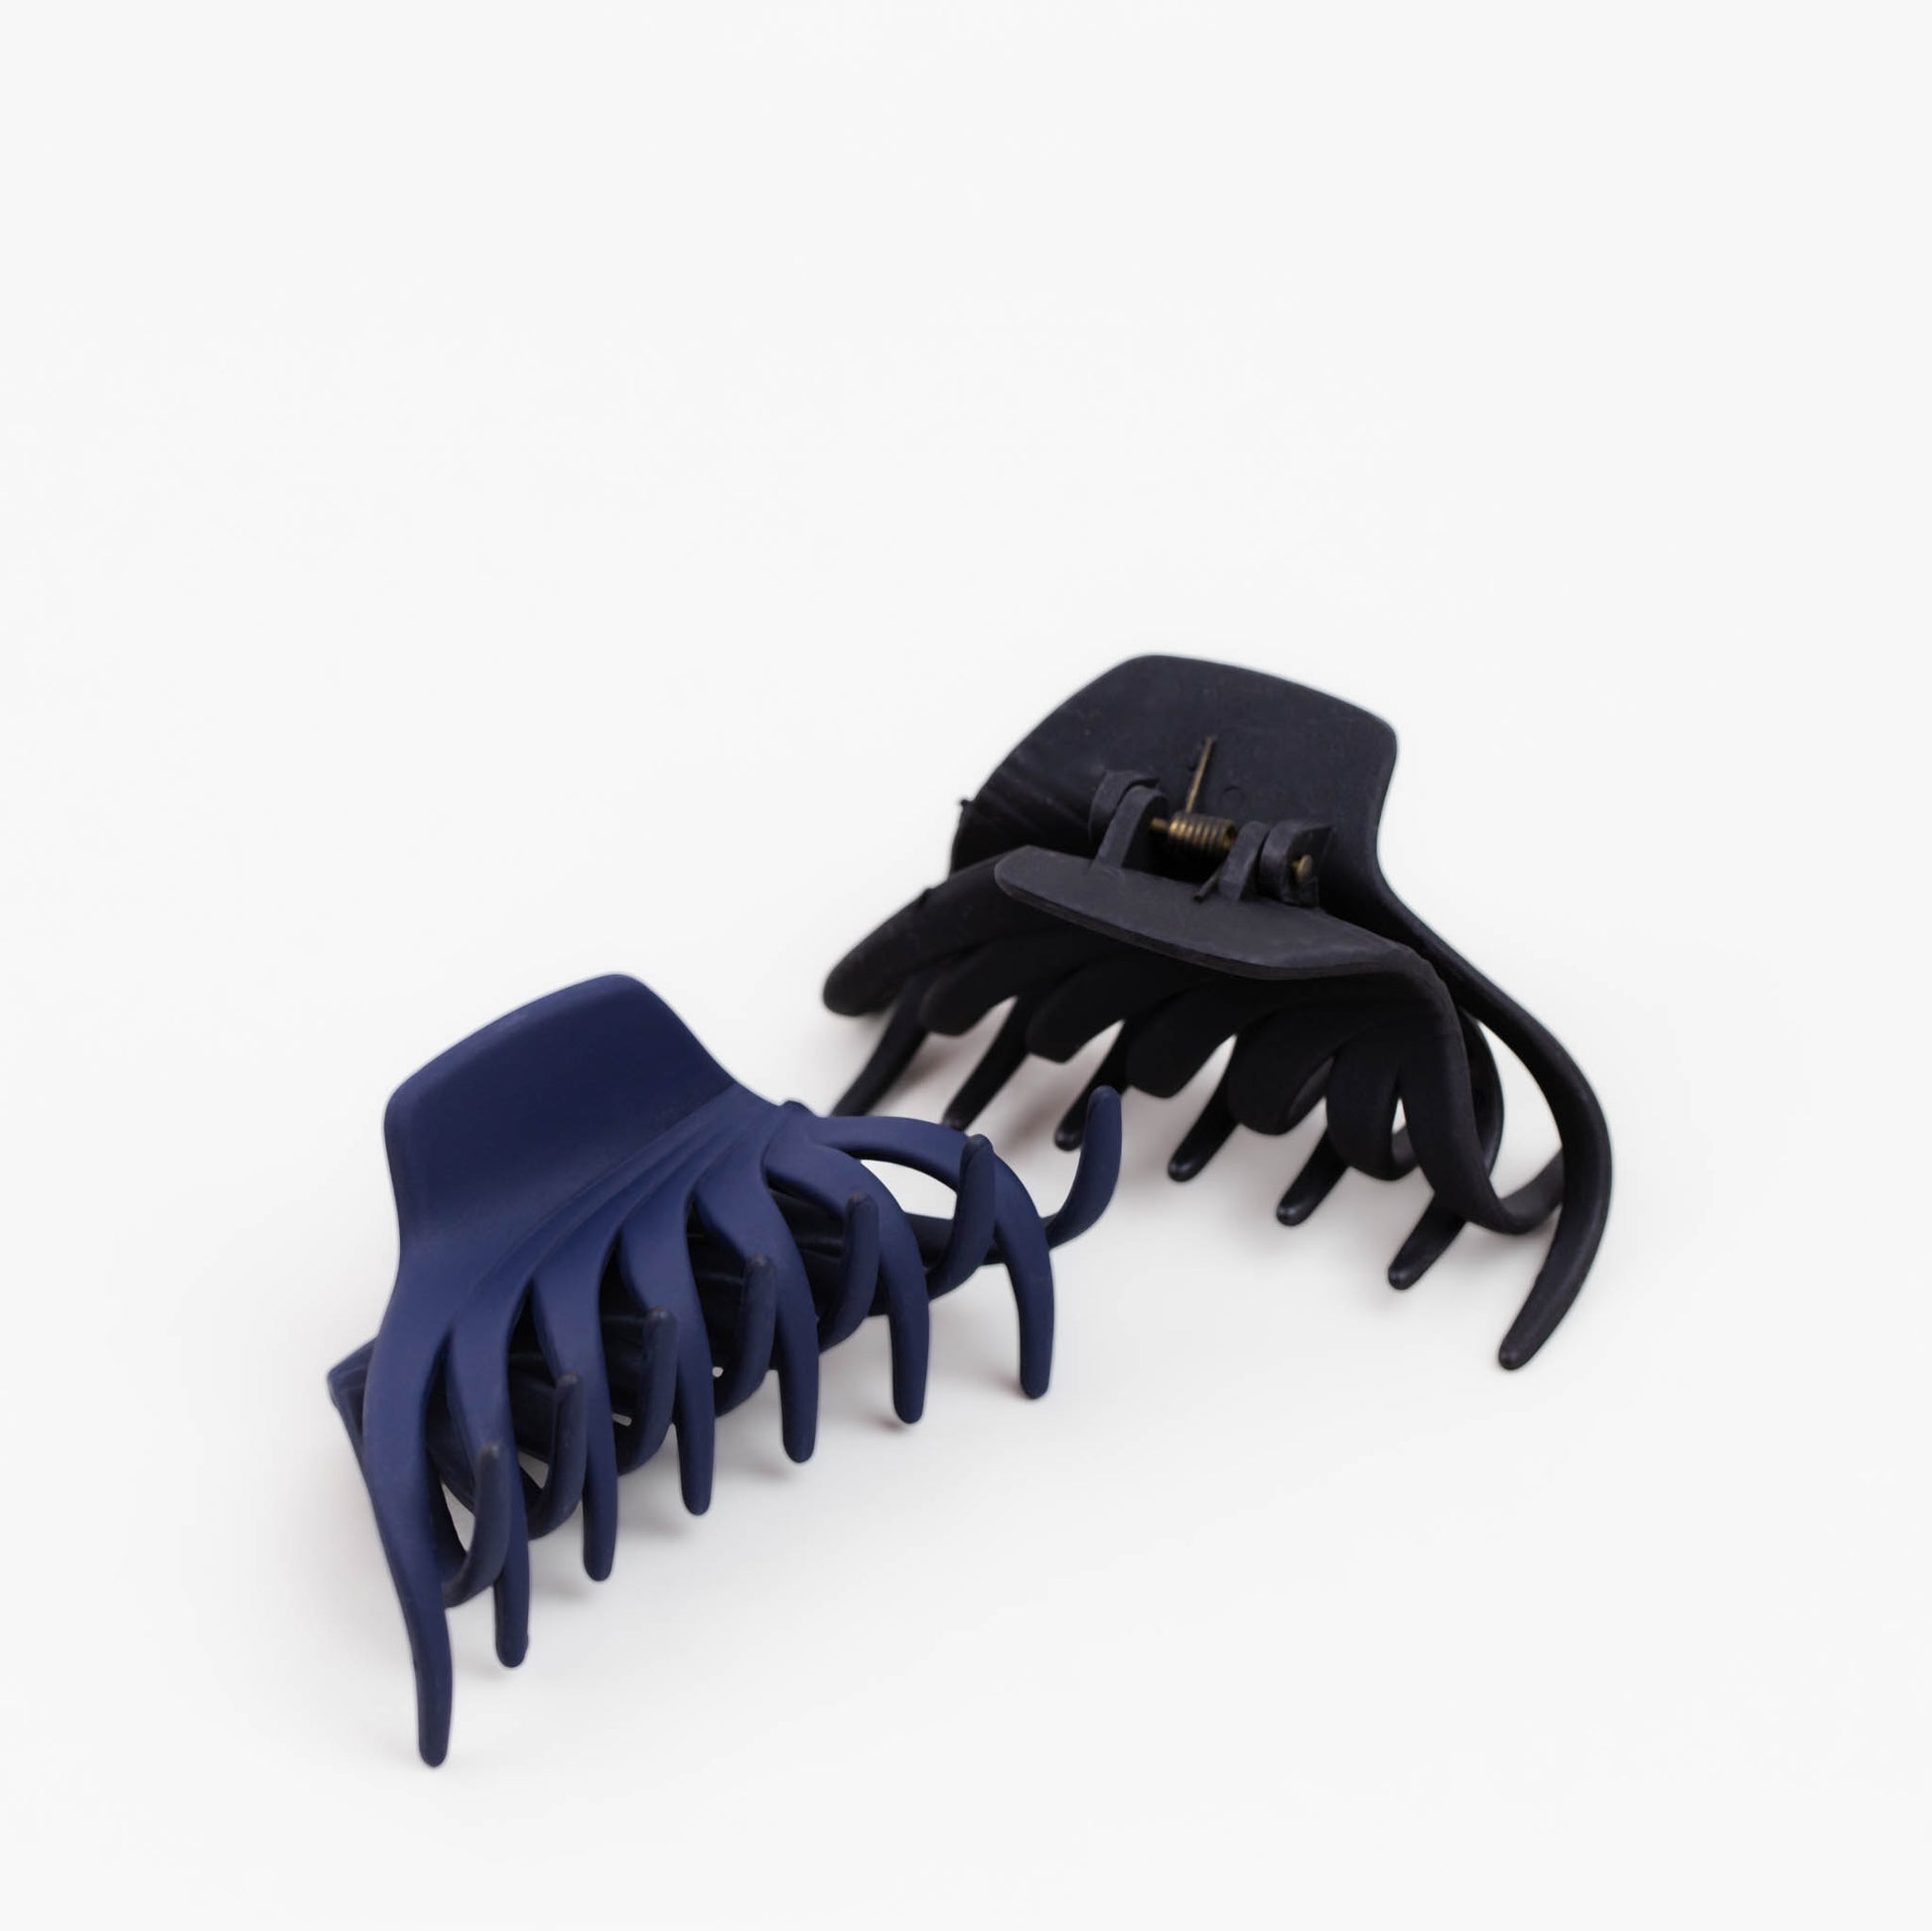 Clame de păr mari în stil octopus cu textură de silicon, set 2 buc - Negru, Albastru